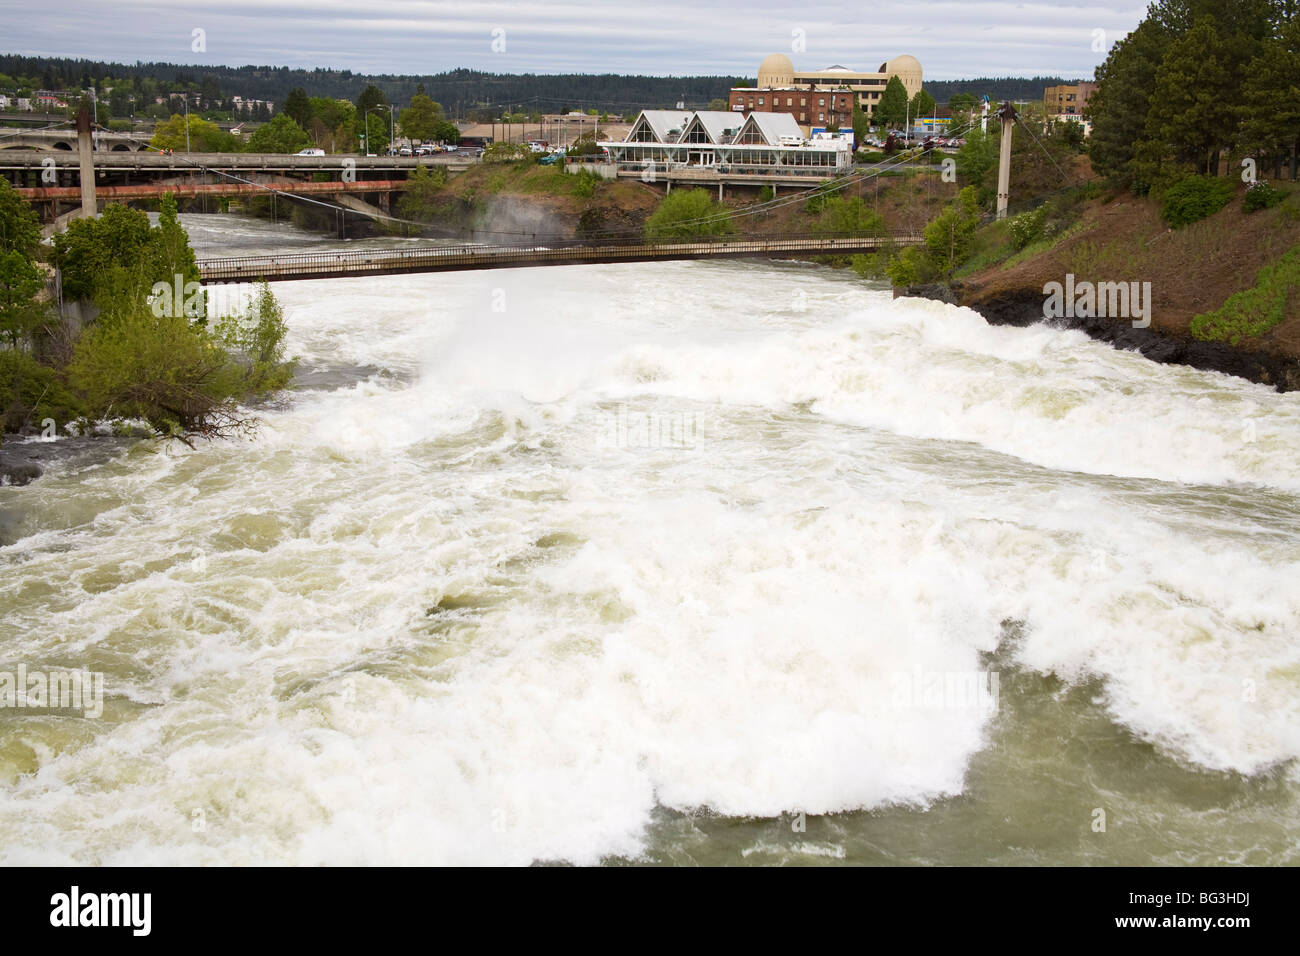 Río Spokane en grandes inundaciones, el parque Riverfront Park, Spokane, Estado de Washington, Estados Unidos de América, América del Norte Foto de stock